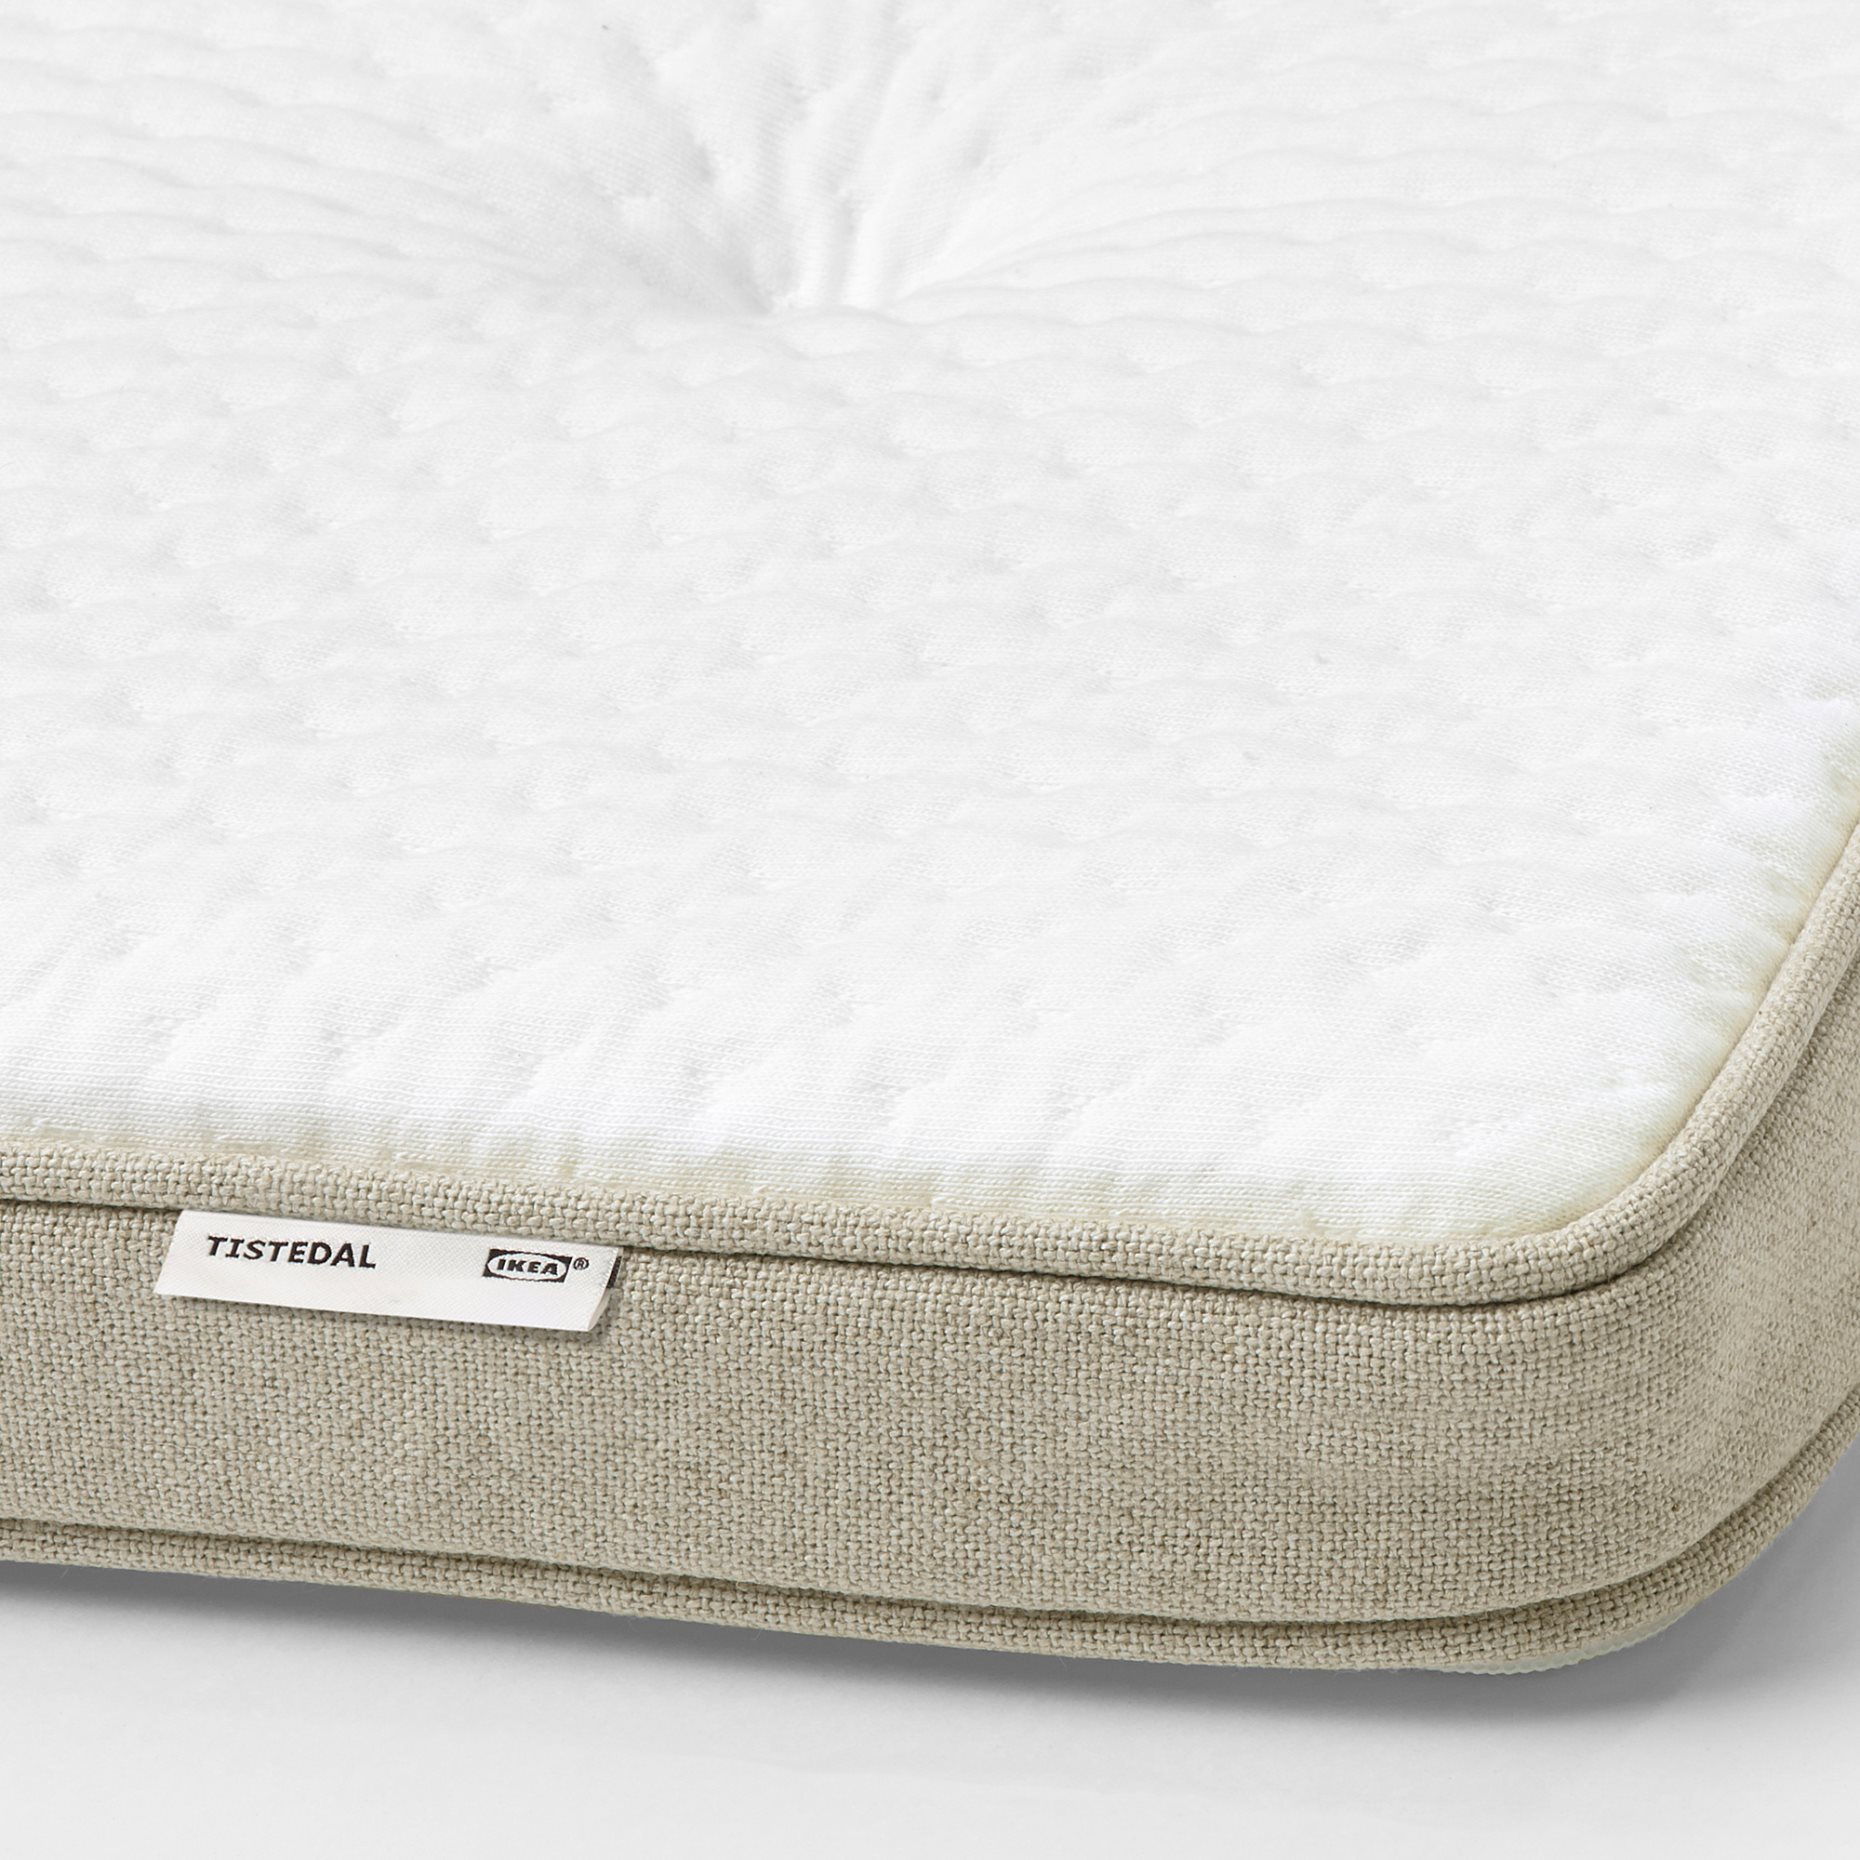 TISTEDAL, mattress pad, 103.732.78